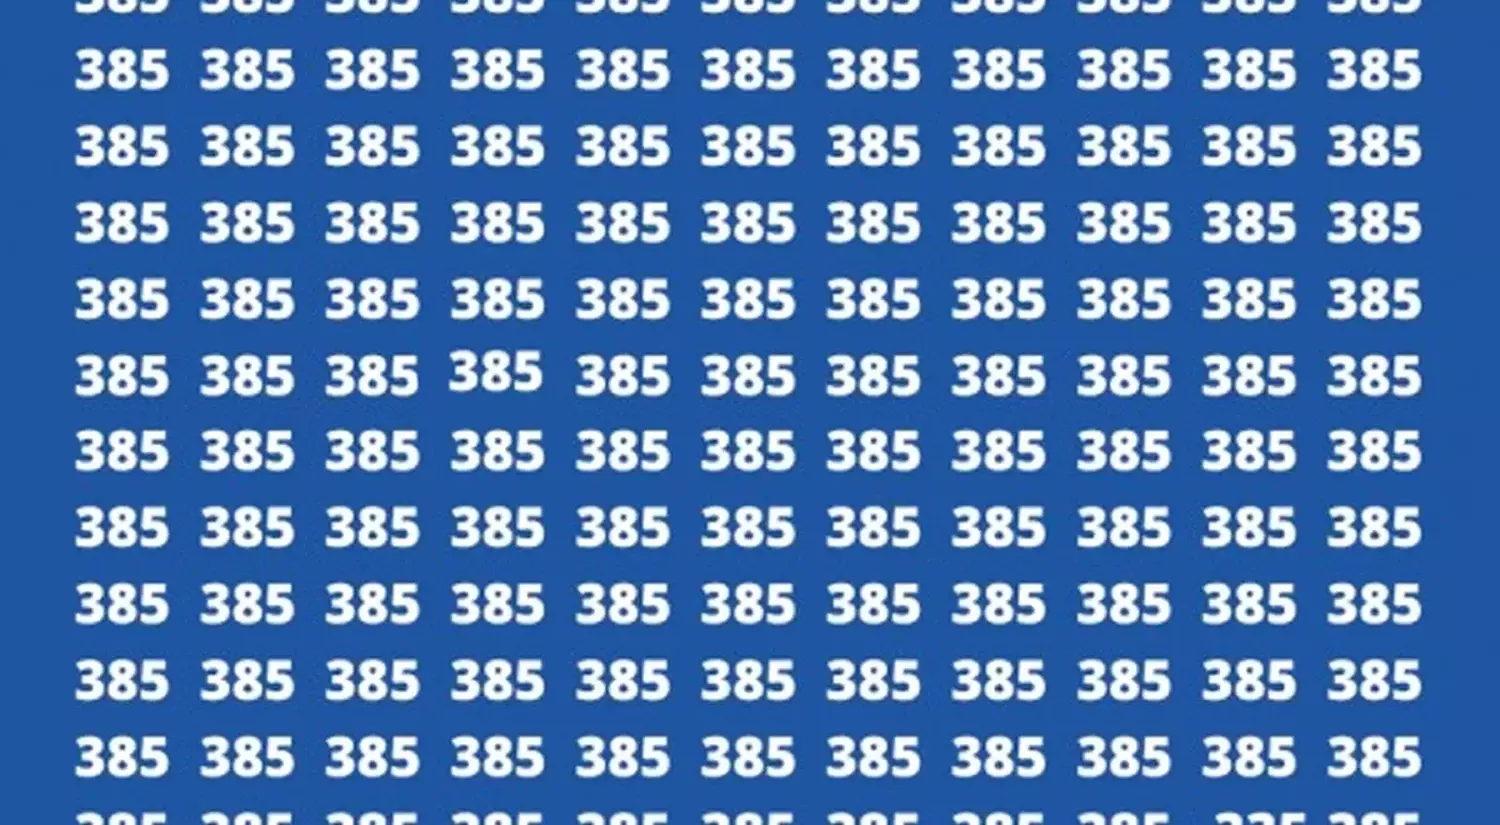 Você consegue encontrar o número 335 em apenas dez segundos? Este teste óptico colocará sua visão à prova